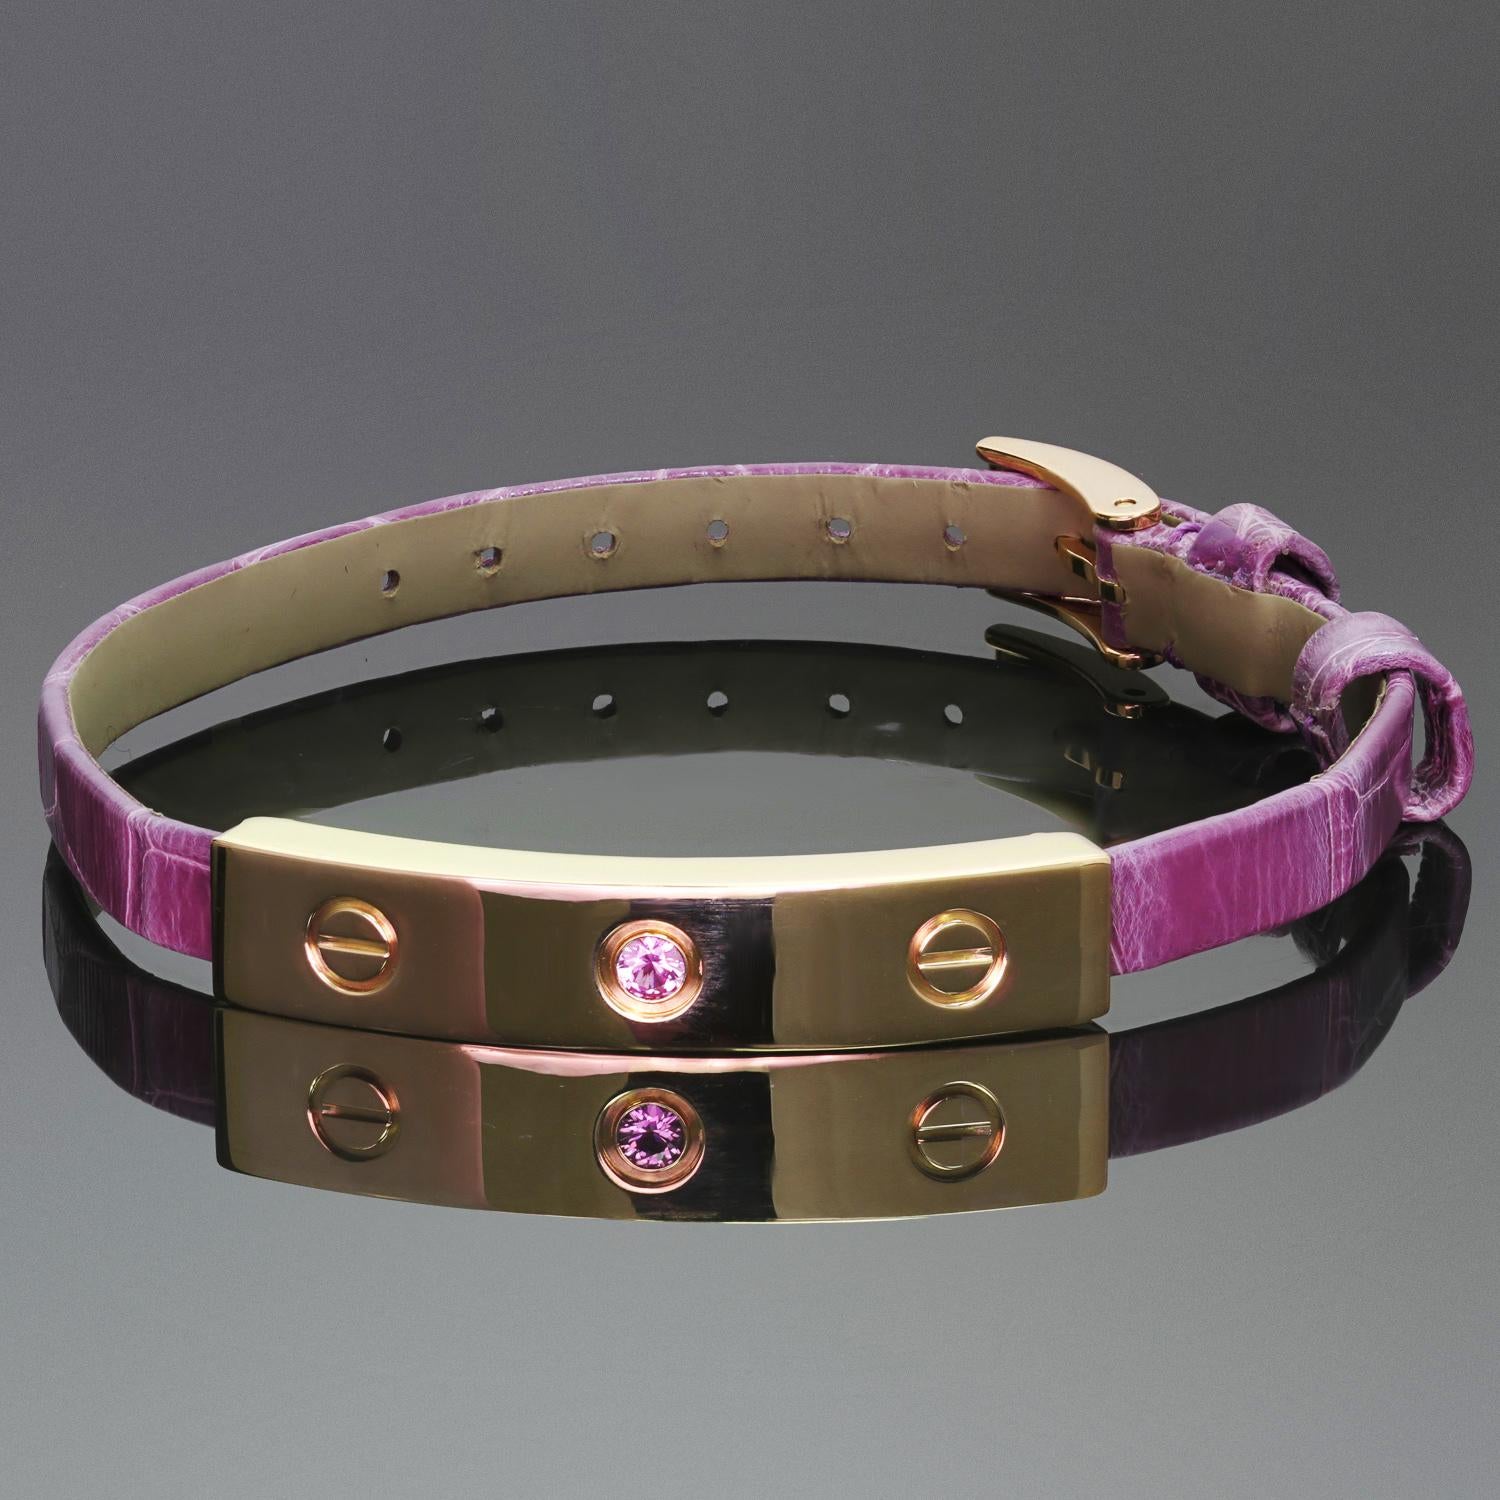 Dieses wunderschöne Armband von Cartier aus der ikonischen Love Collection besteht aus einer Schiebestange aus 18 Karat Roségold, die mit einem runden lila-rosafarbenen Saphir besetzt ist, und wird durch ein malvenfarbenes Krokodillederband und eine